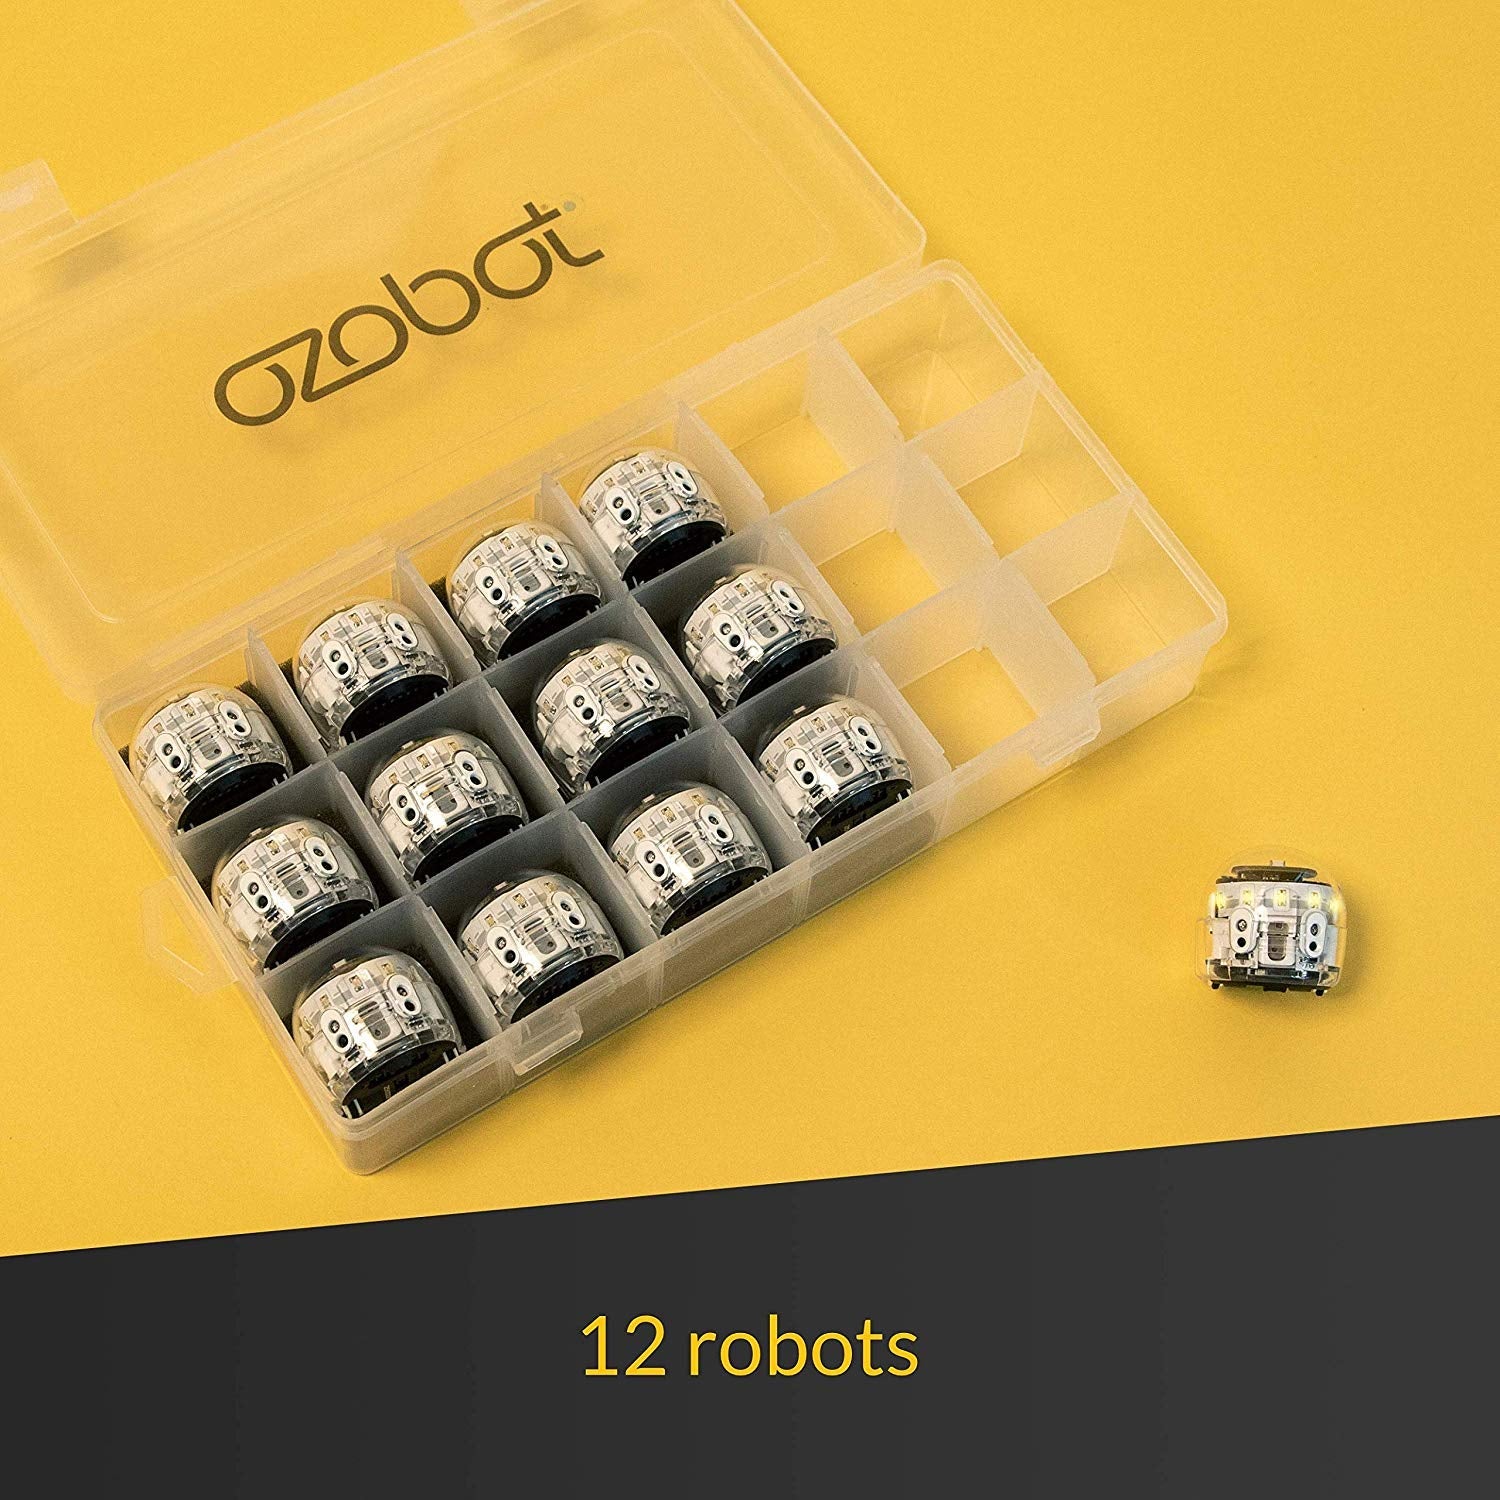 Ozobot Evo robot Entry Kit